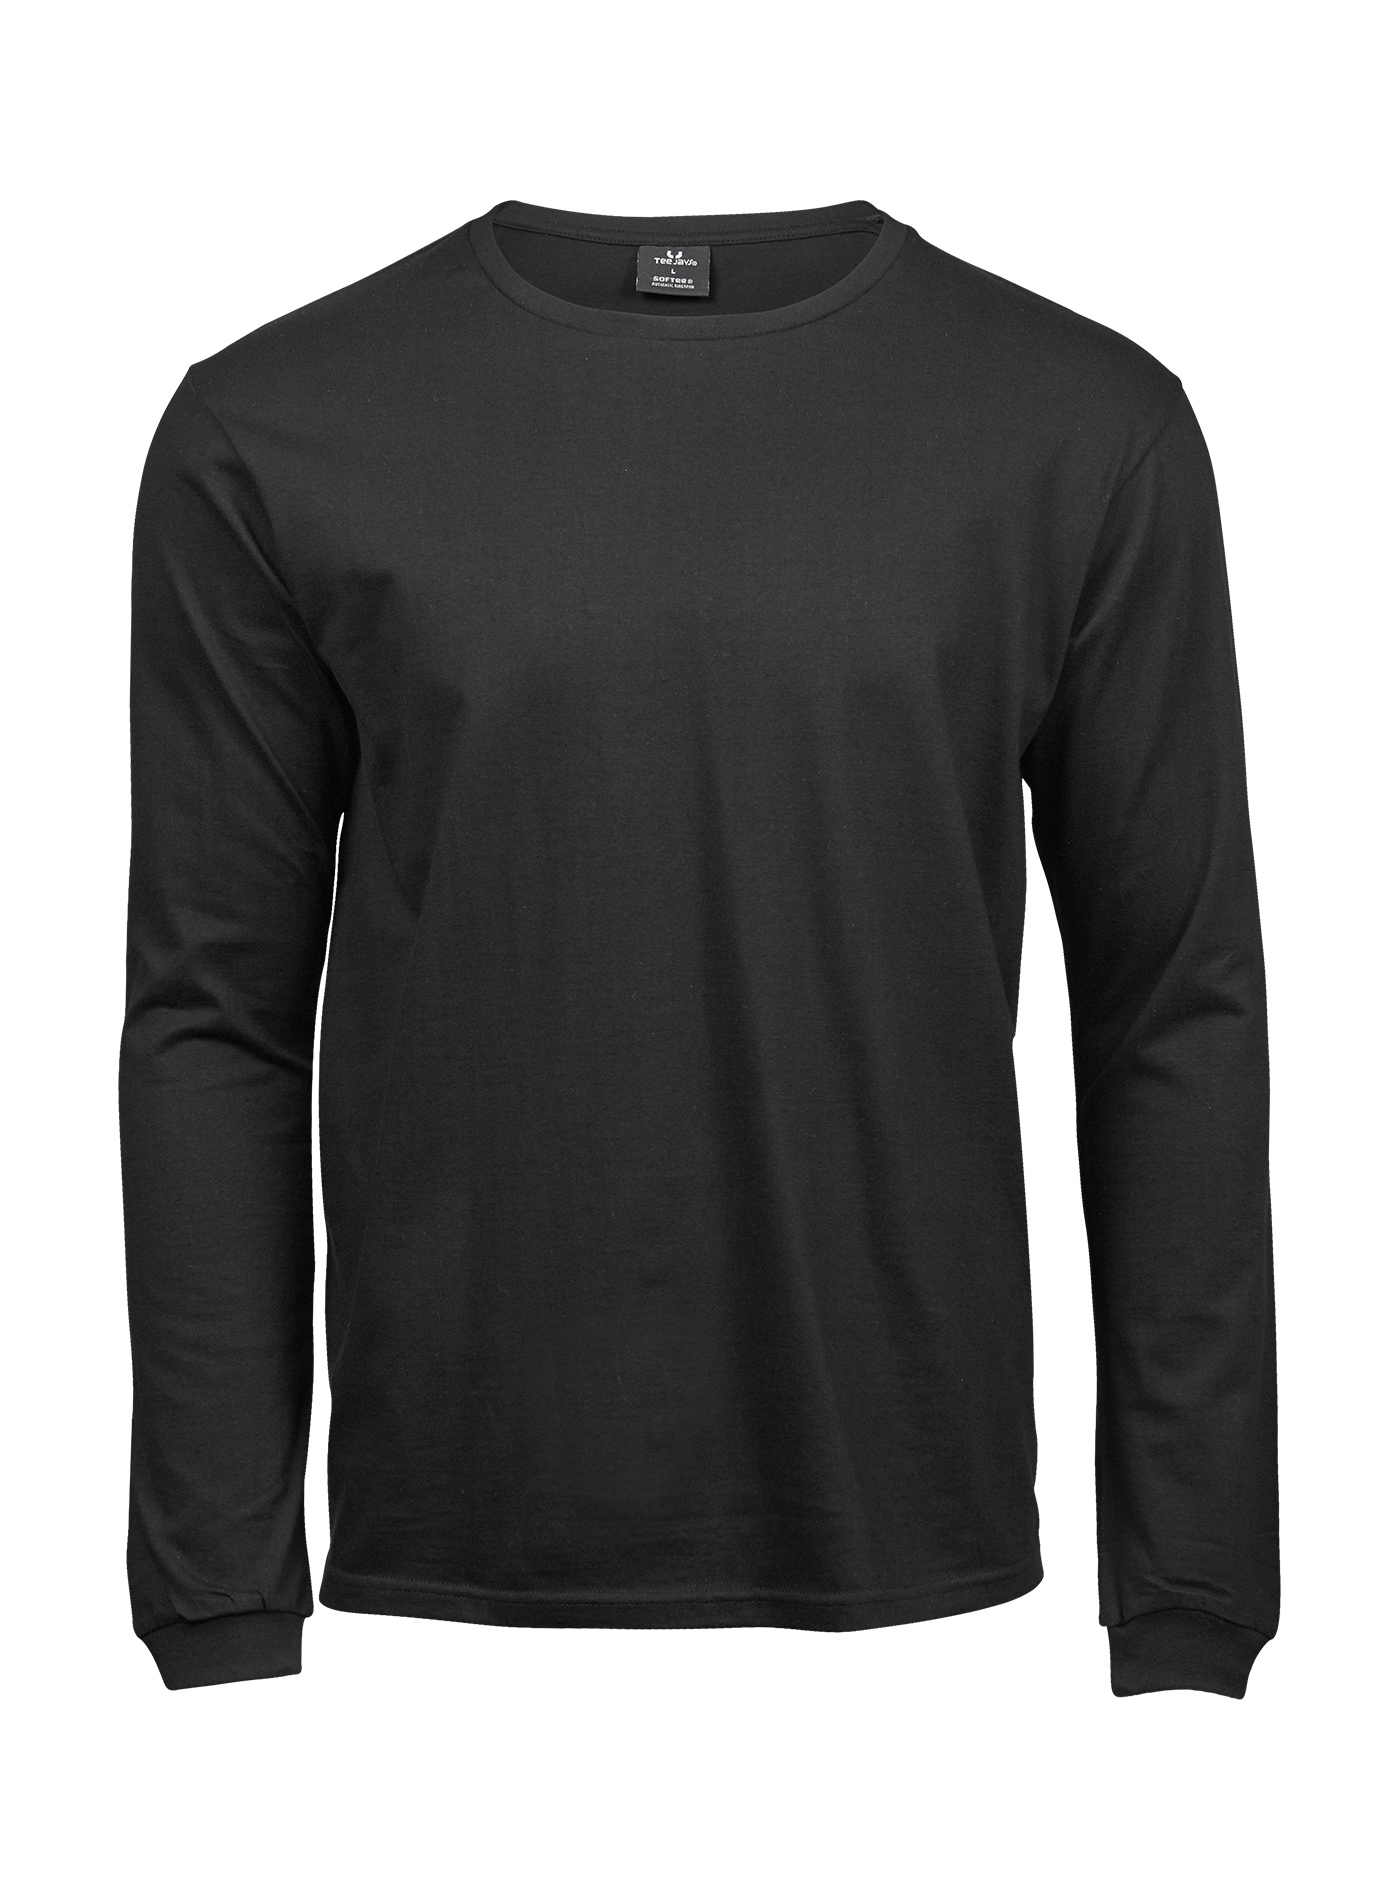 Pánské tričko s dlouhým rukávem Tee Jays Sof-Tee - černá L